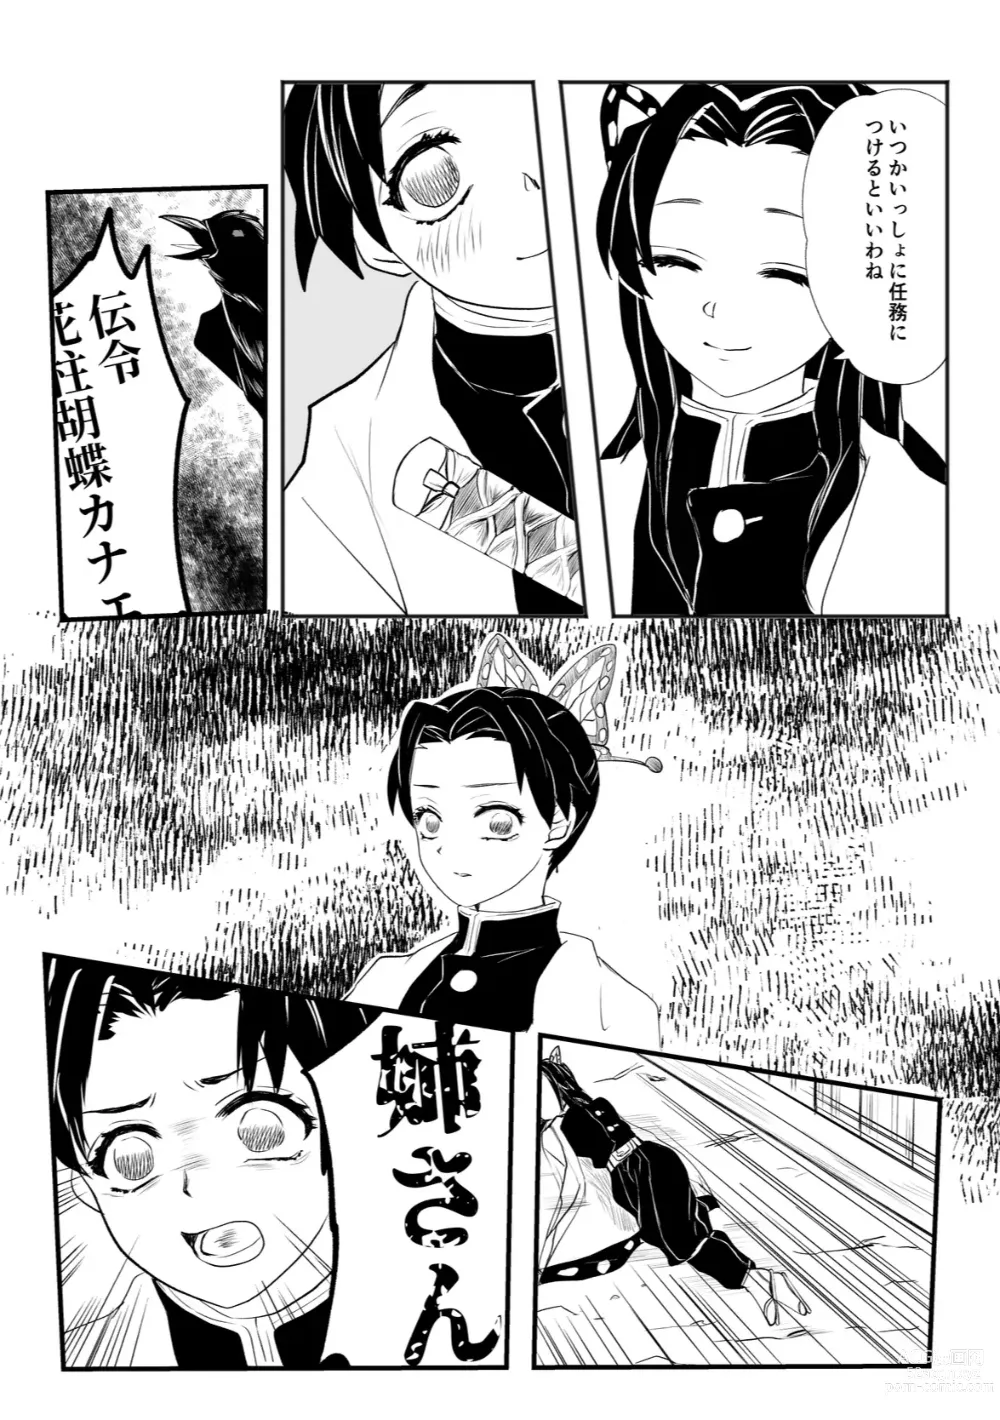 Page 9 of doujinshi Hodokete Tokeru